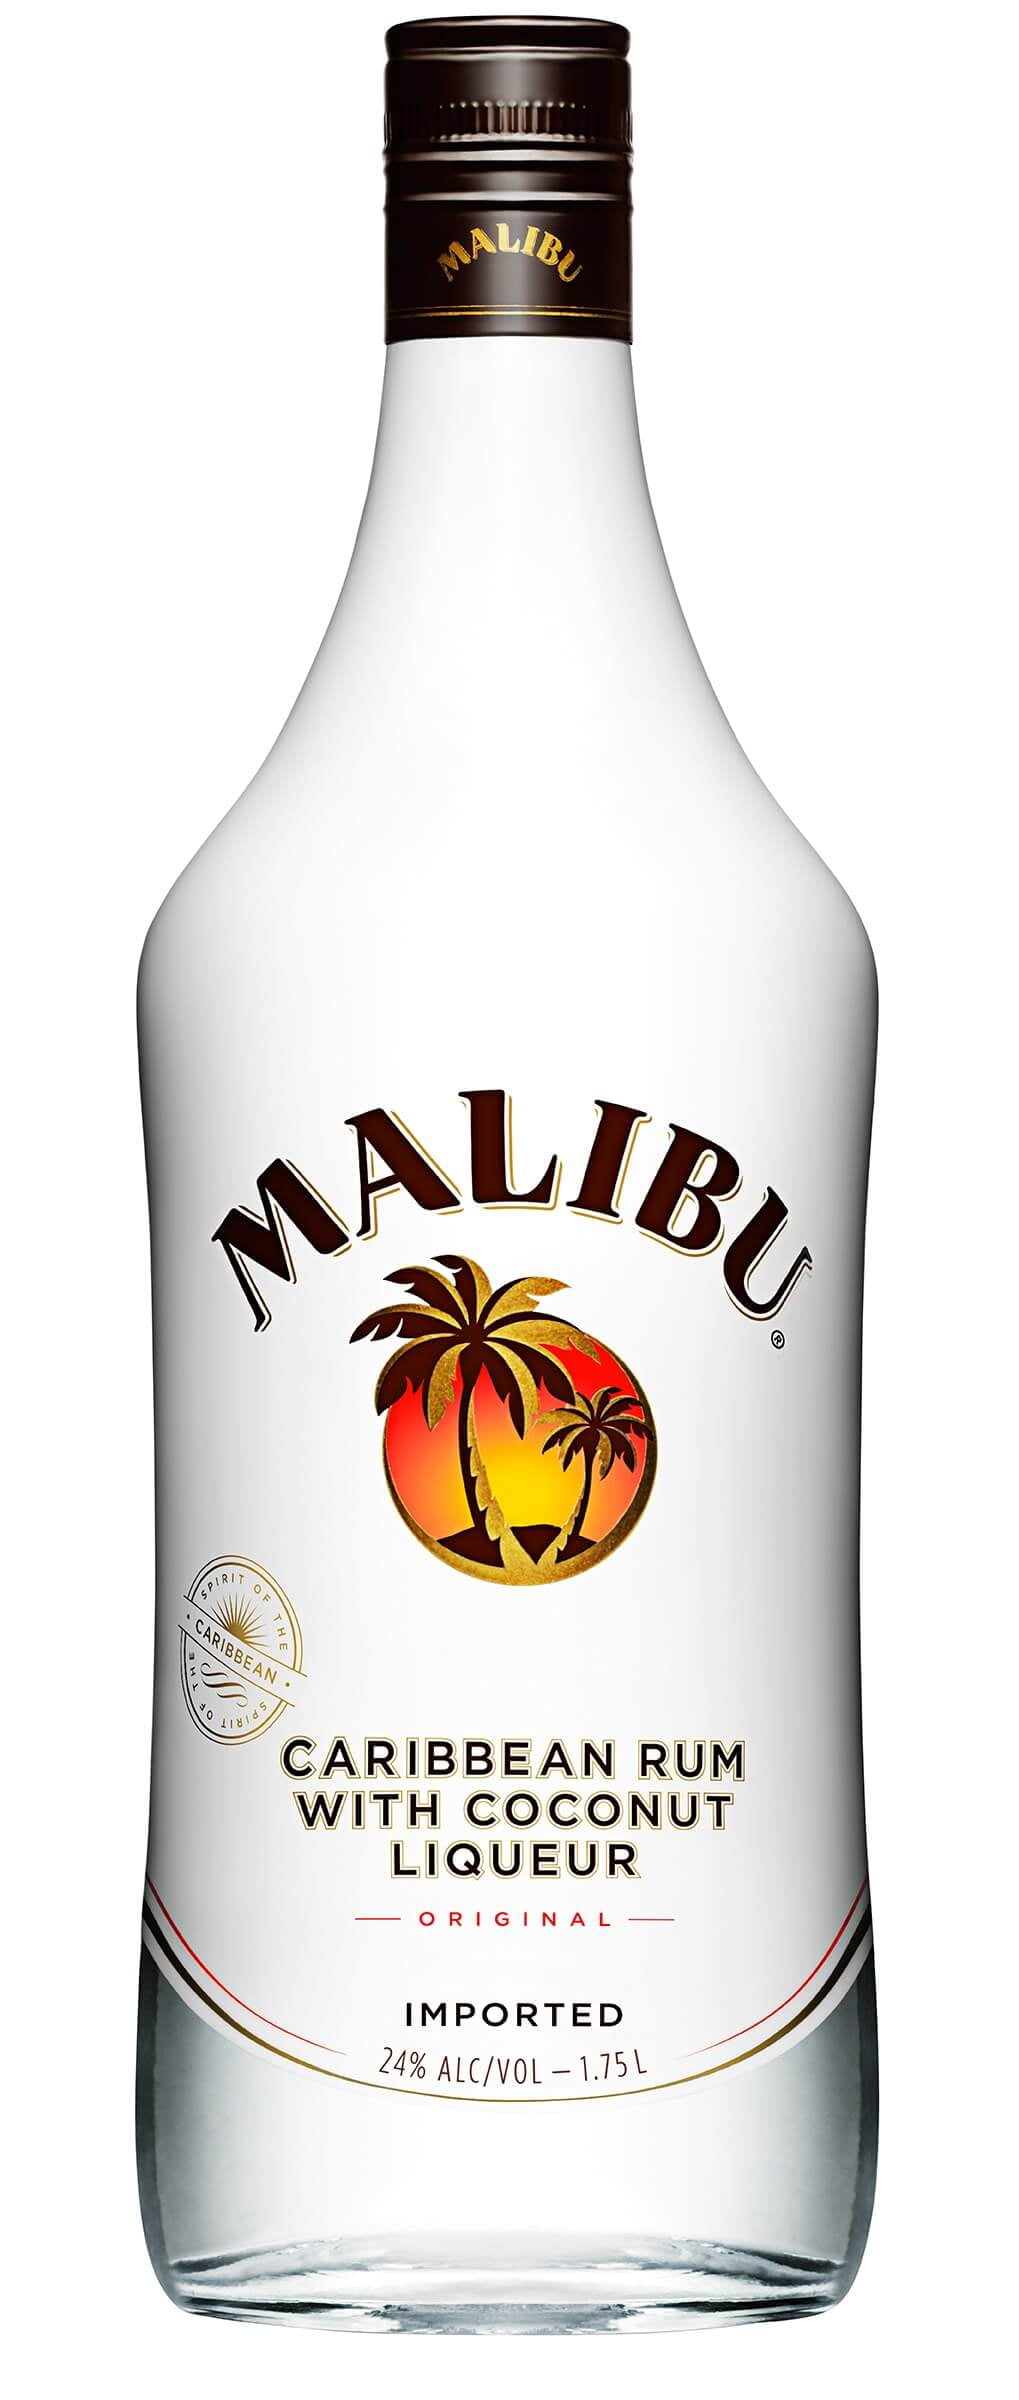 Malibu Rum Caribbean Original Coconut Rum 1.75L Bottle ...